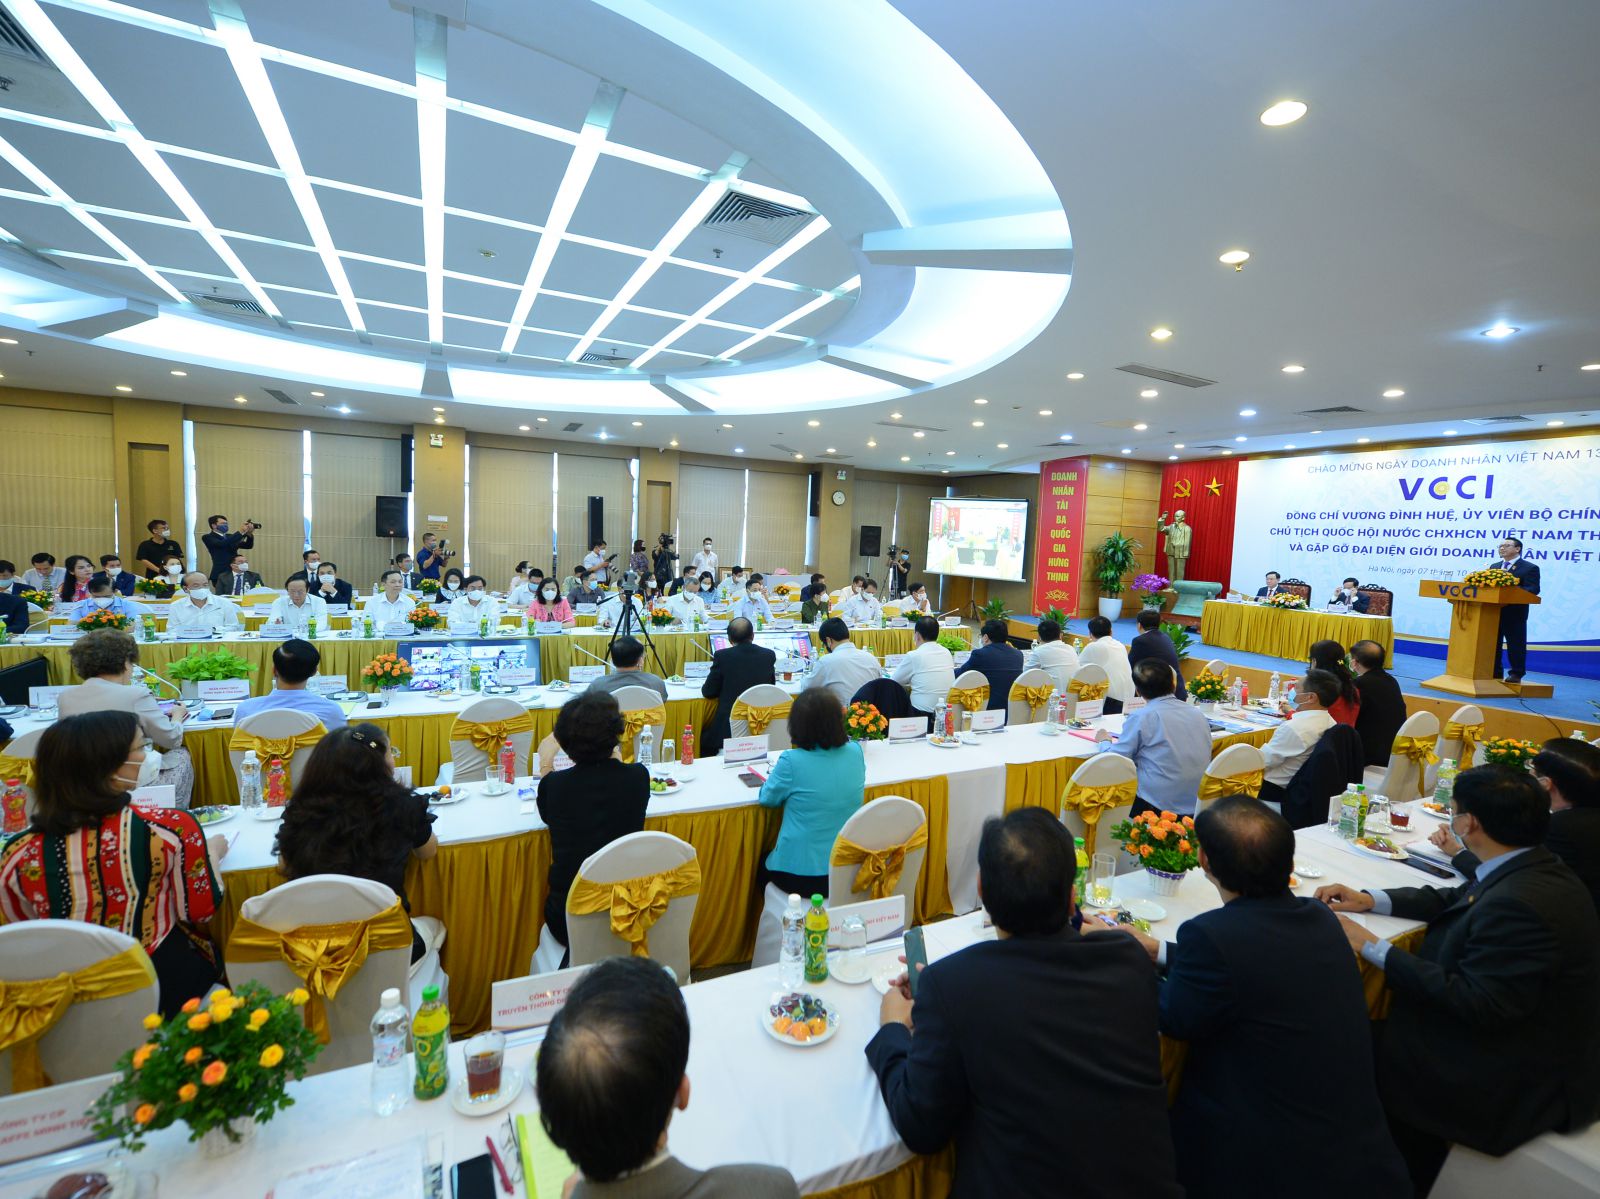 Chủ tịch Quốc hội Vương Đình Huệ làm việc với VCCI và gặp gỡ đại diện giới doanh nhân.